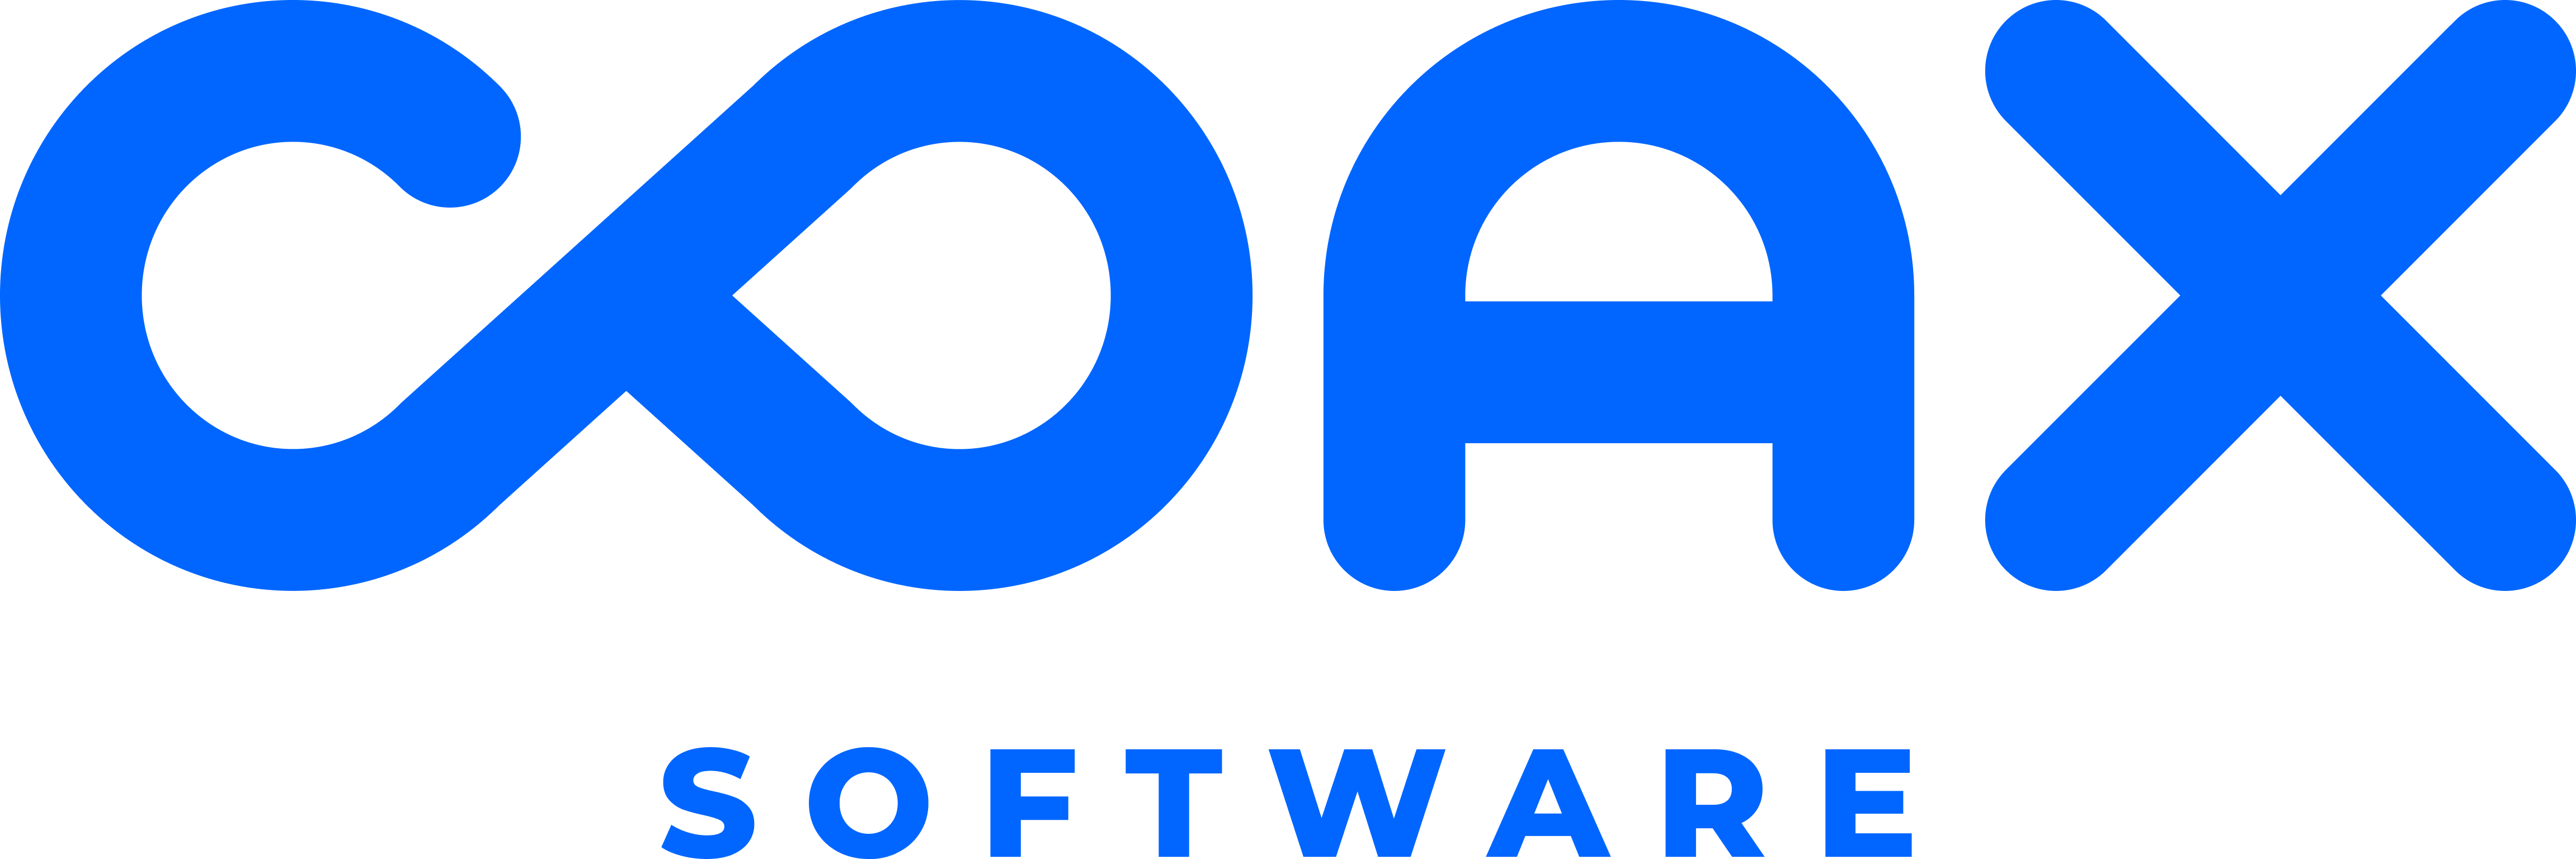 COAX Software company logo